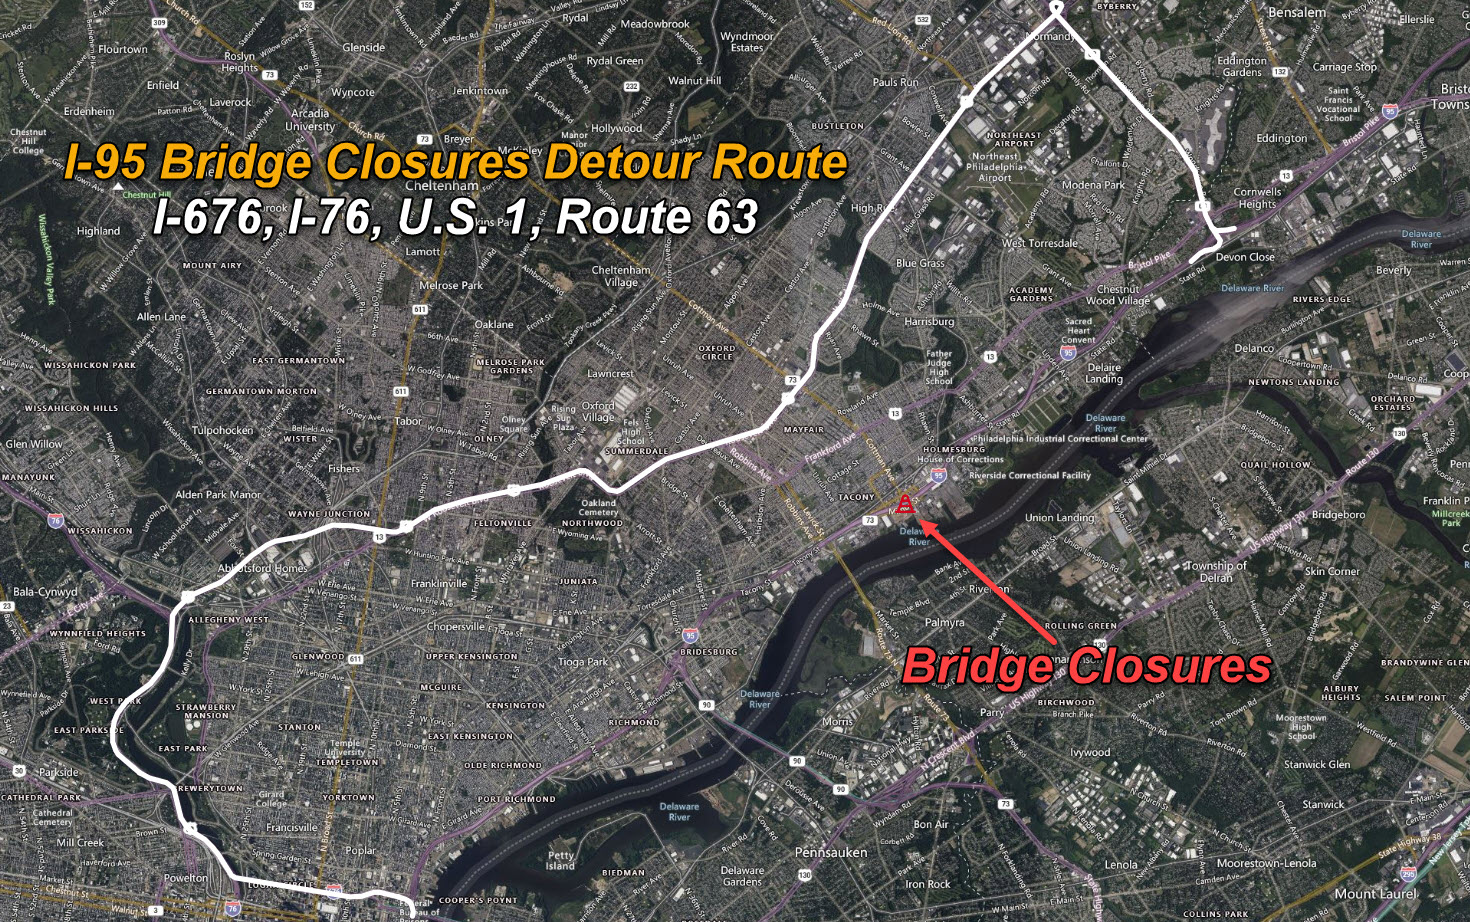 I-95 Bridge Closures Primary Detour.jpg